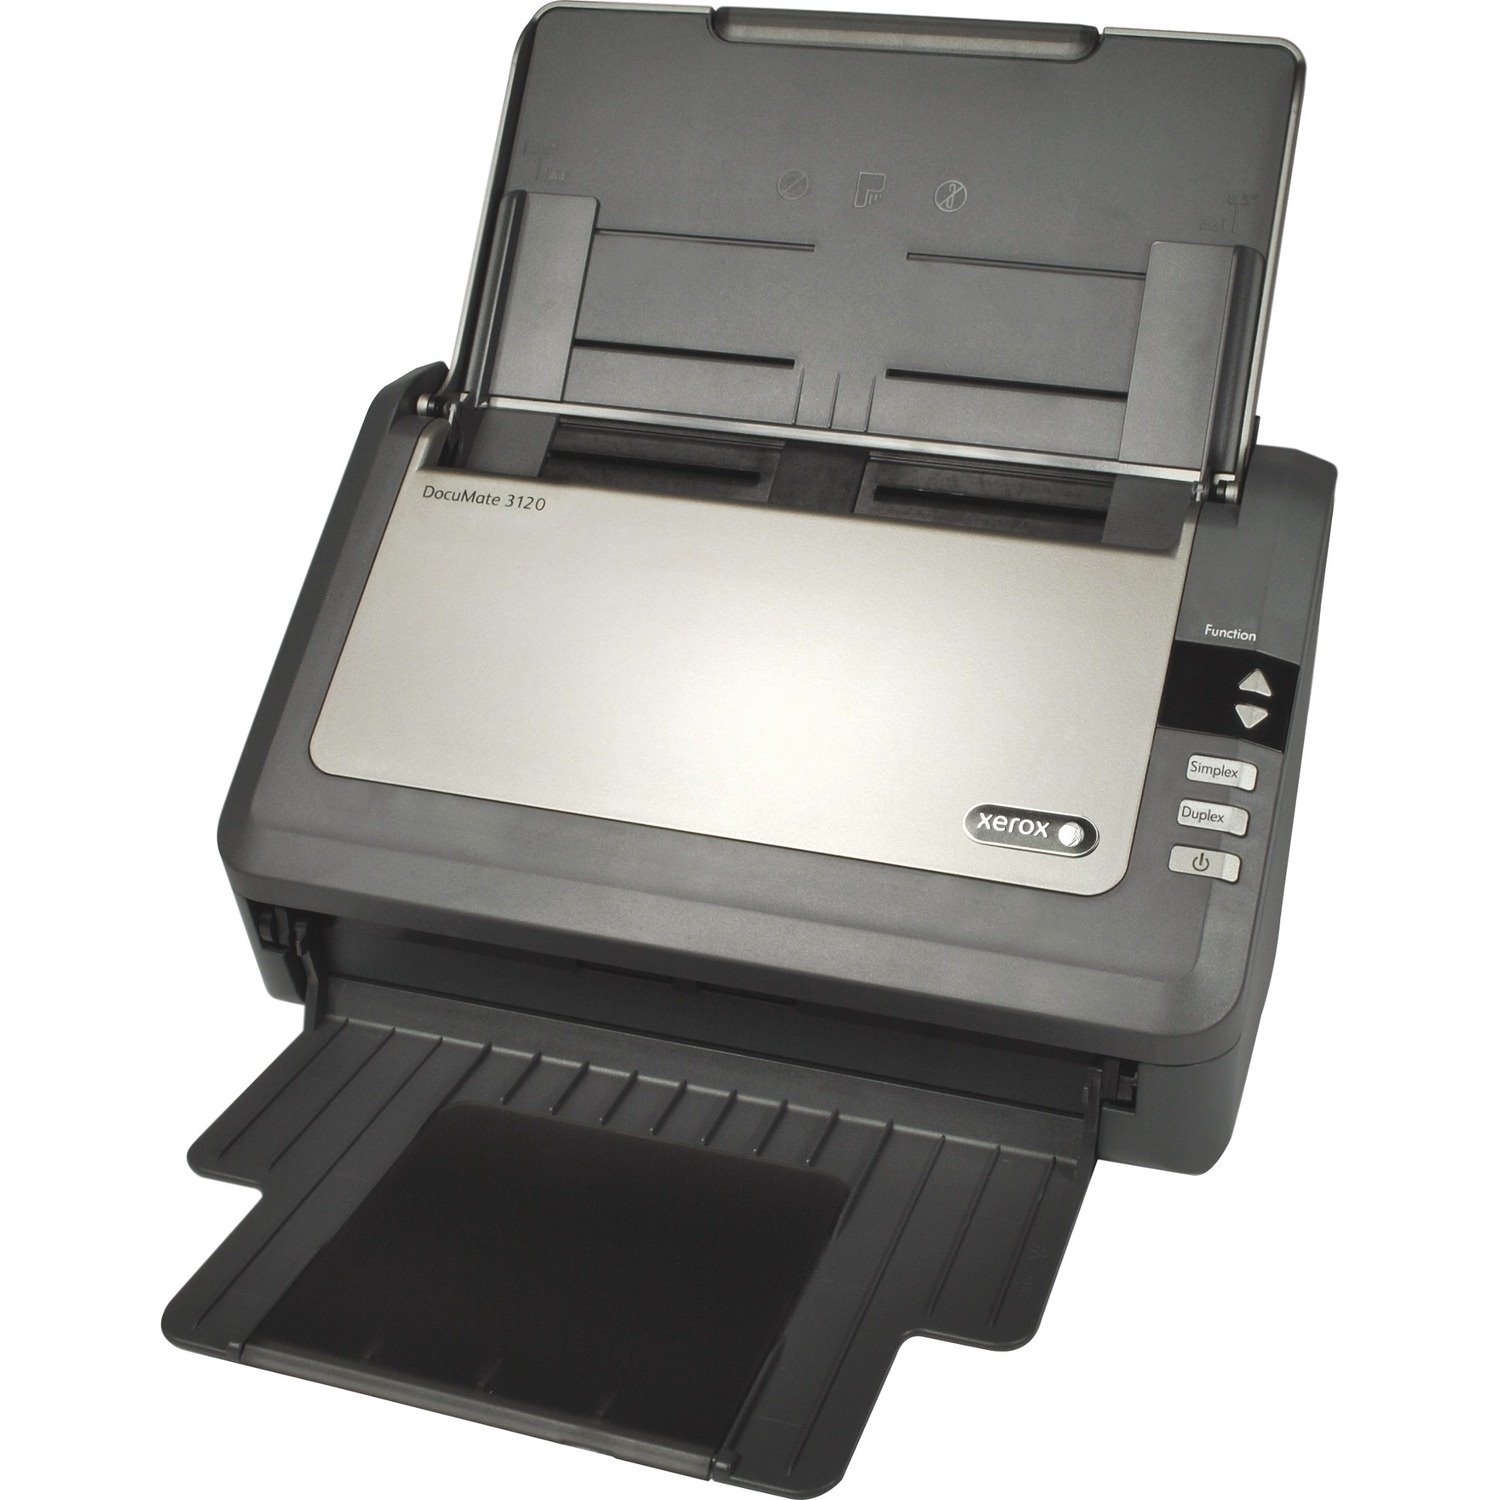 Xerox DocuMate 3120 Sheetfed Scanner - 600 dpi Optical